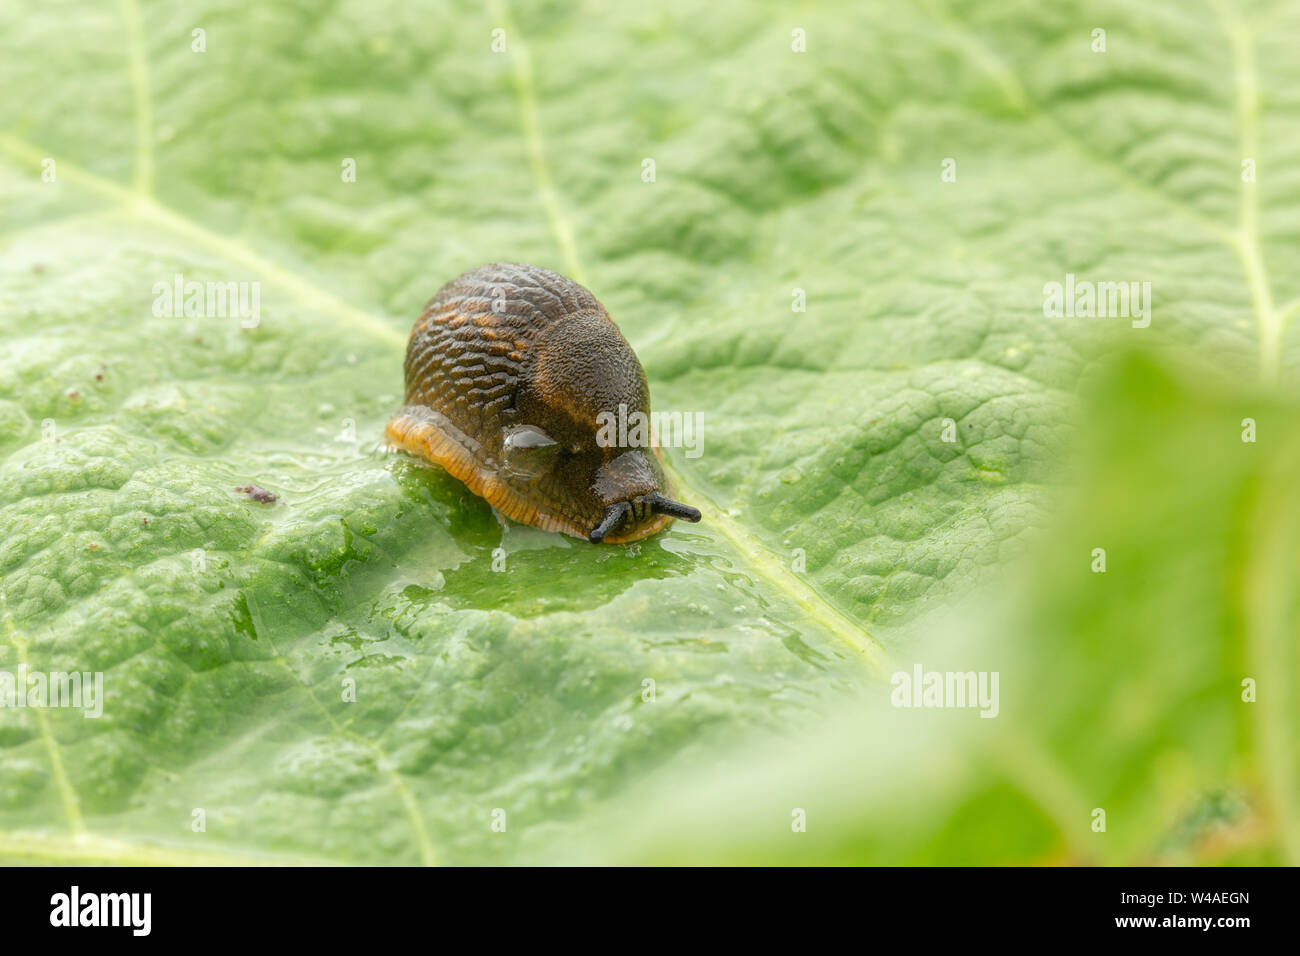 Arion subfuscus slug (sombre) blowing bubbles slime de ses pores respiratoires tout en s'assit sur une grande feuille verte texturée avec flou d'avant Banque D'Images